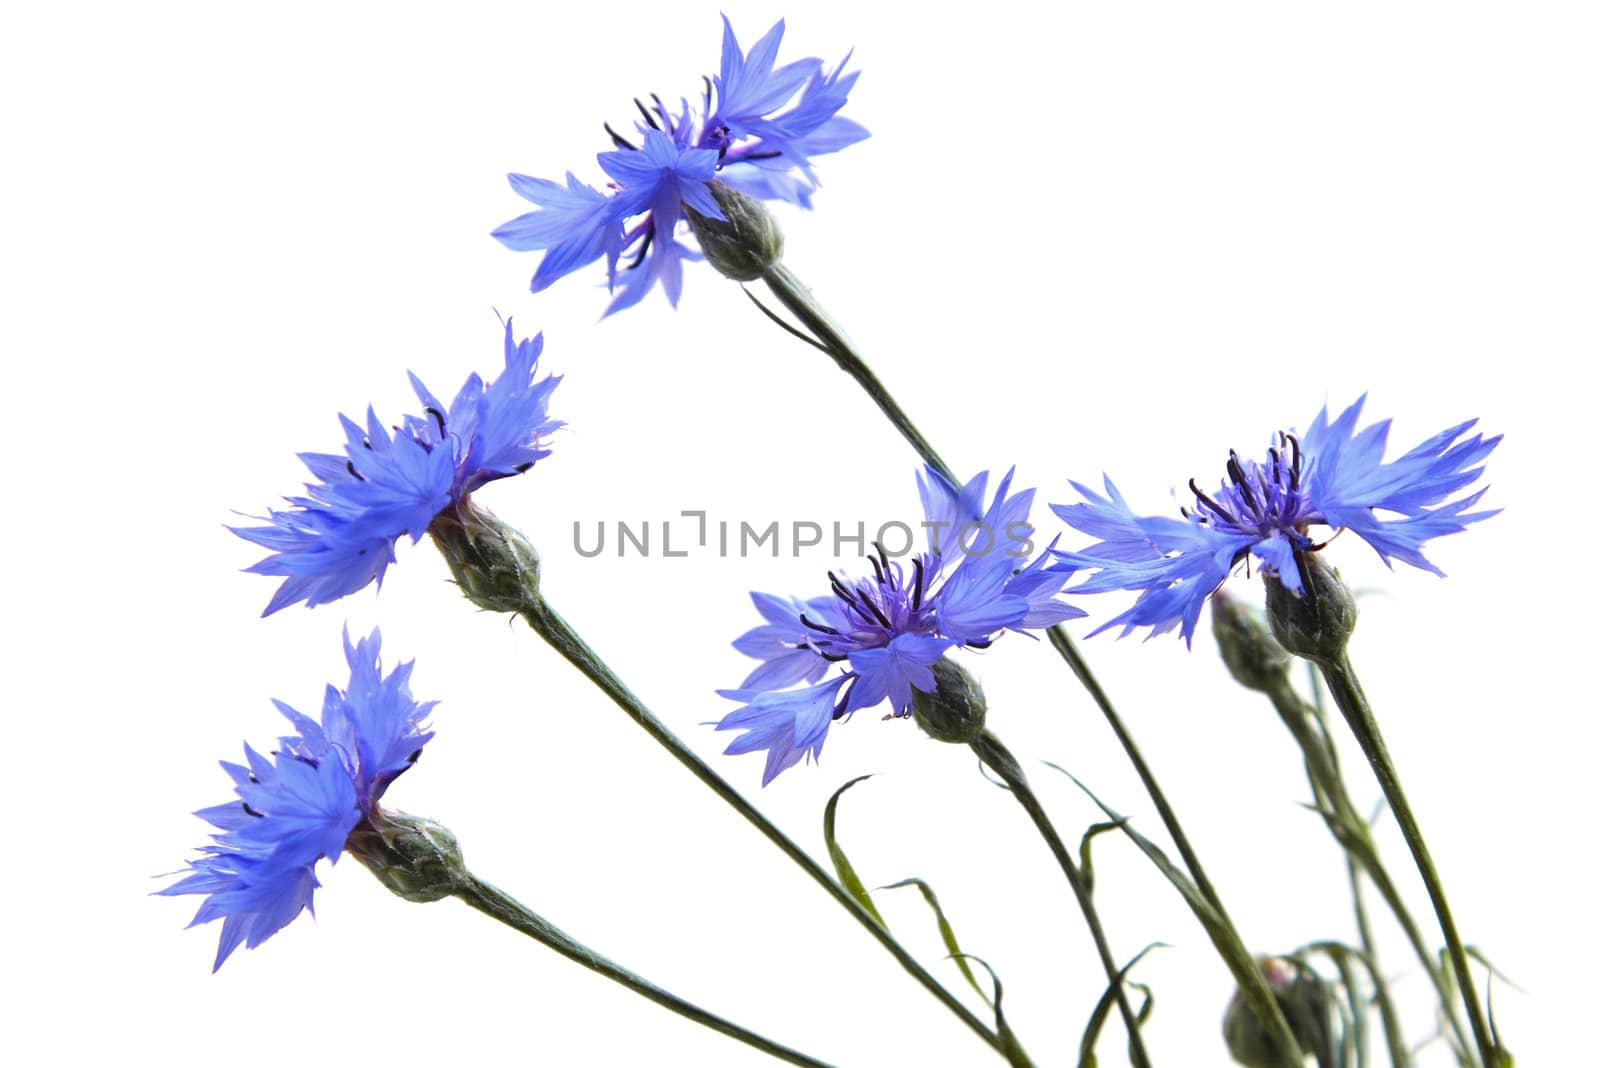 Blue Cornflower isolated on white background

